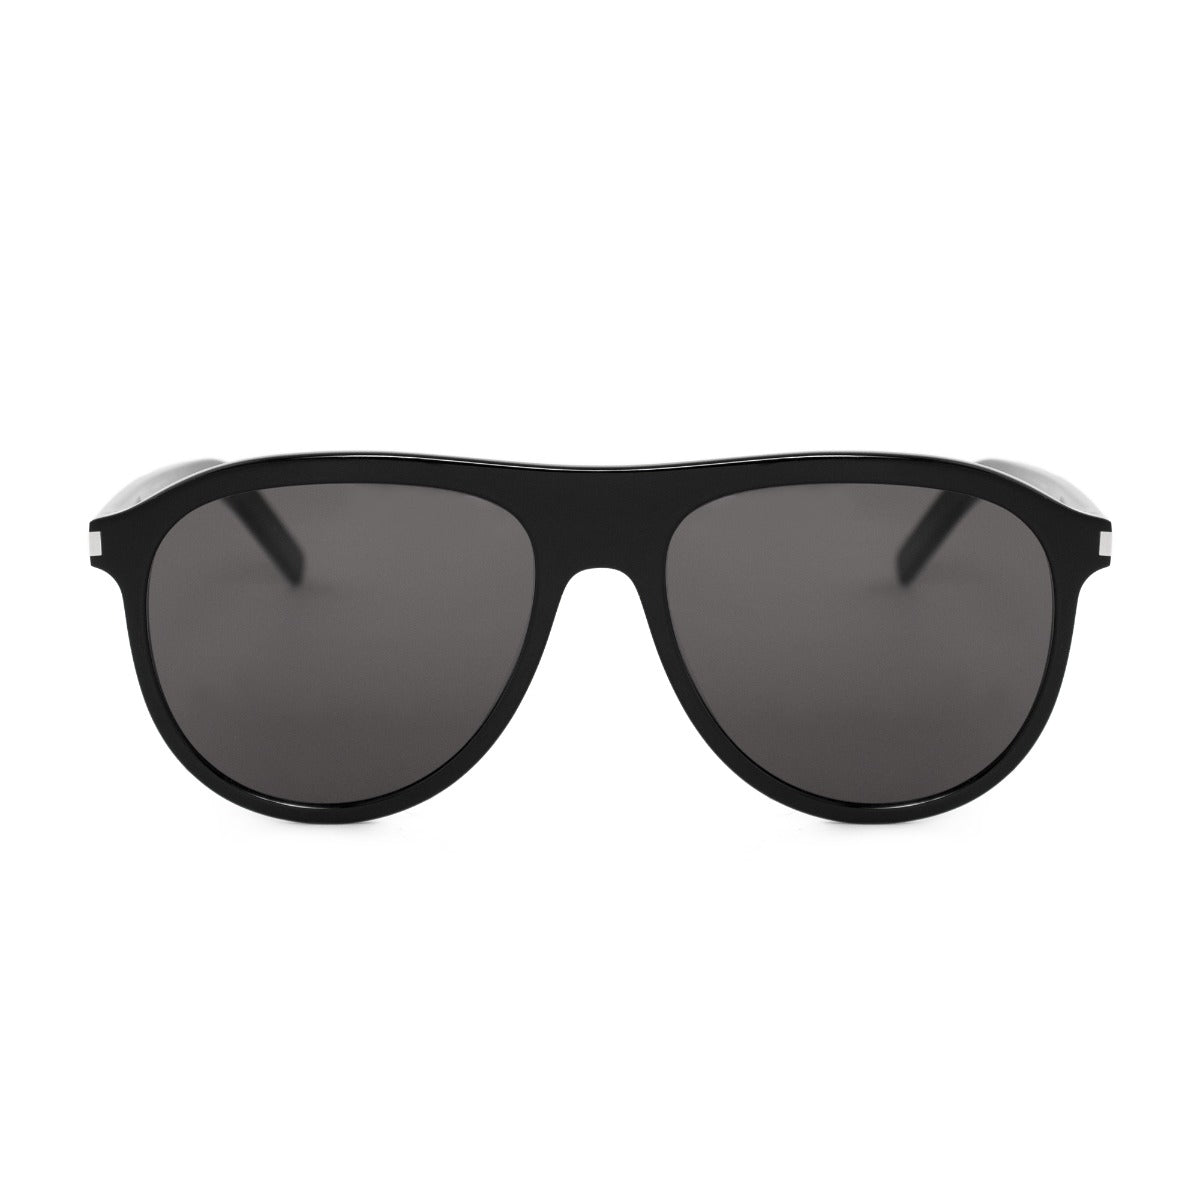 title:Saint Laurent Pilot Sunglasses SL432 001 57;color:Black